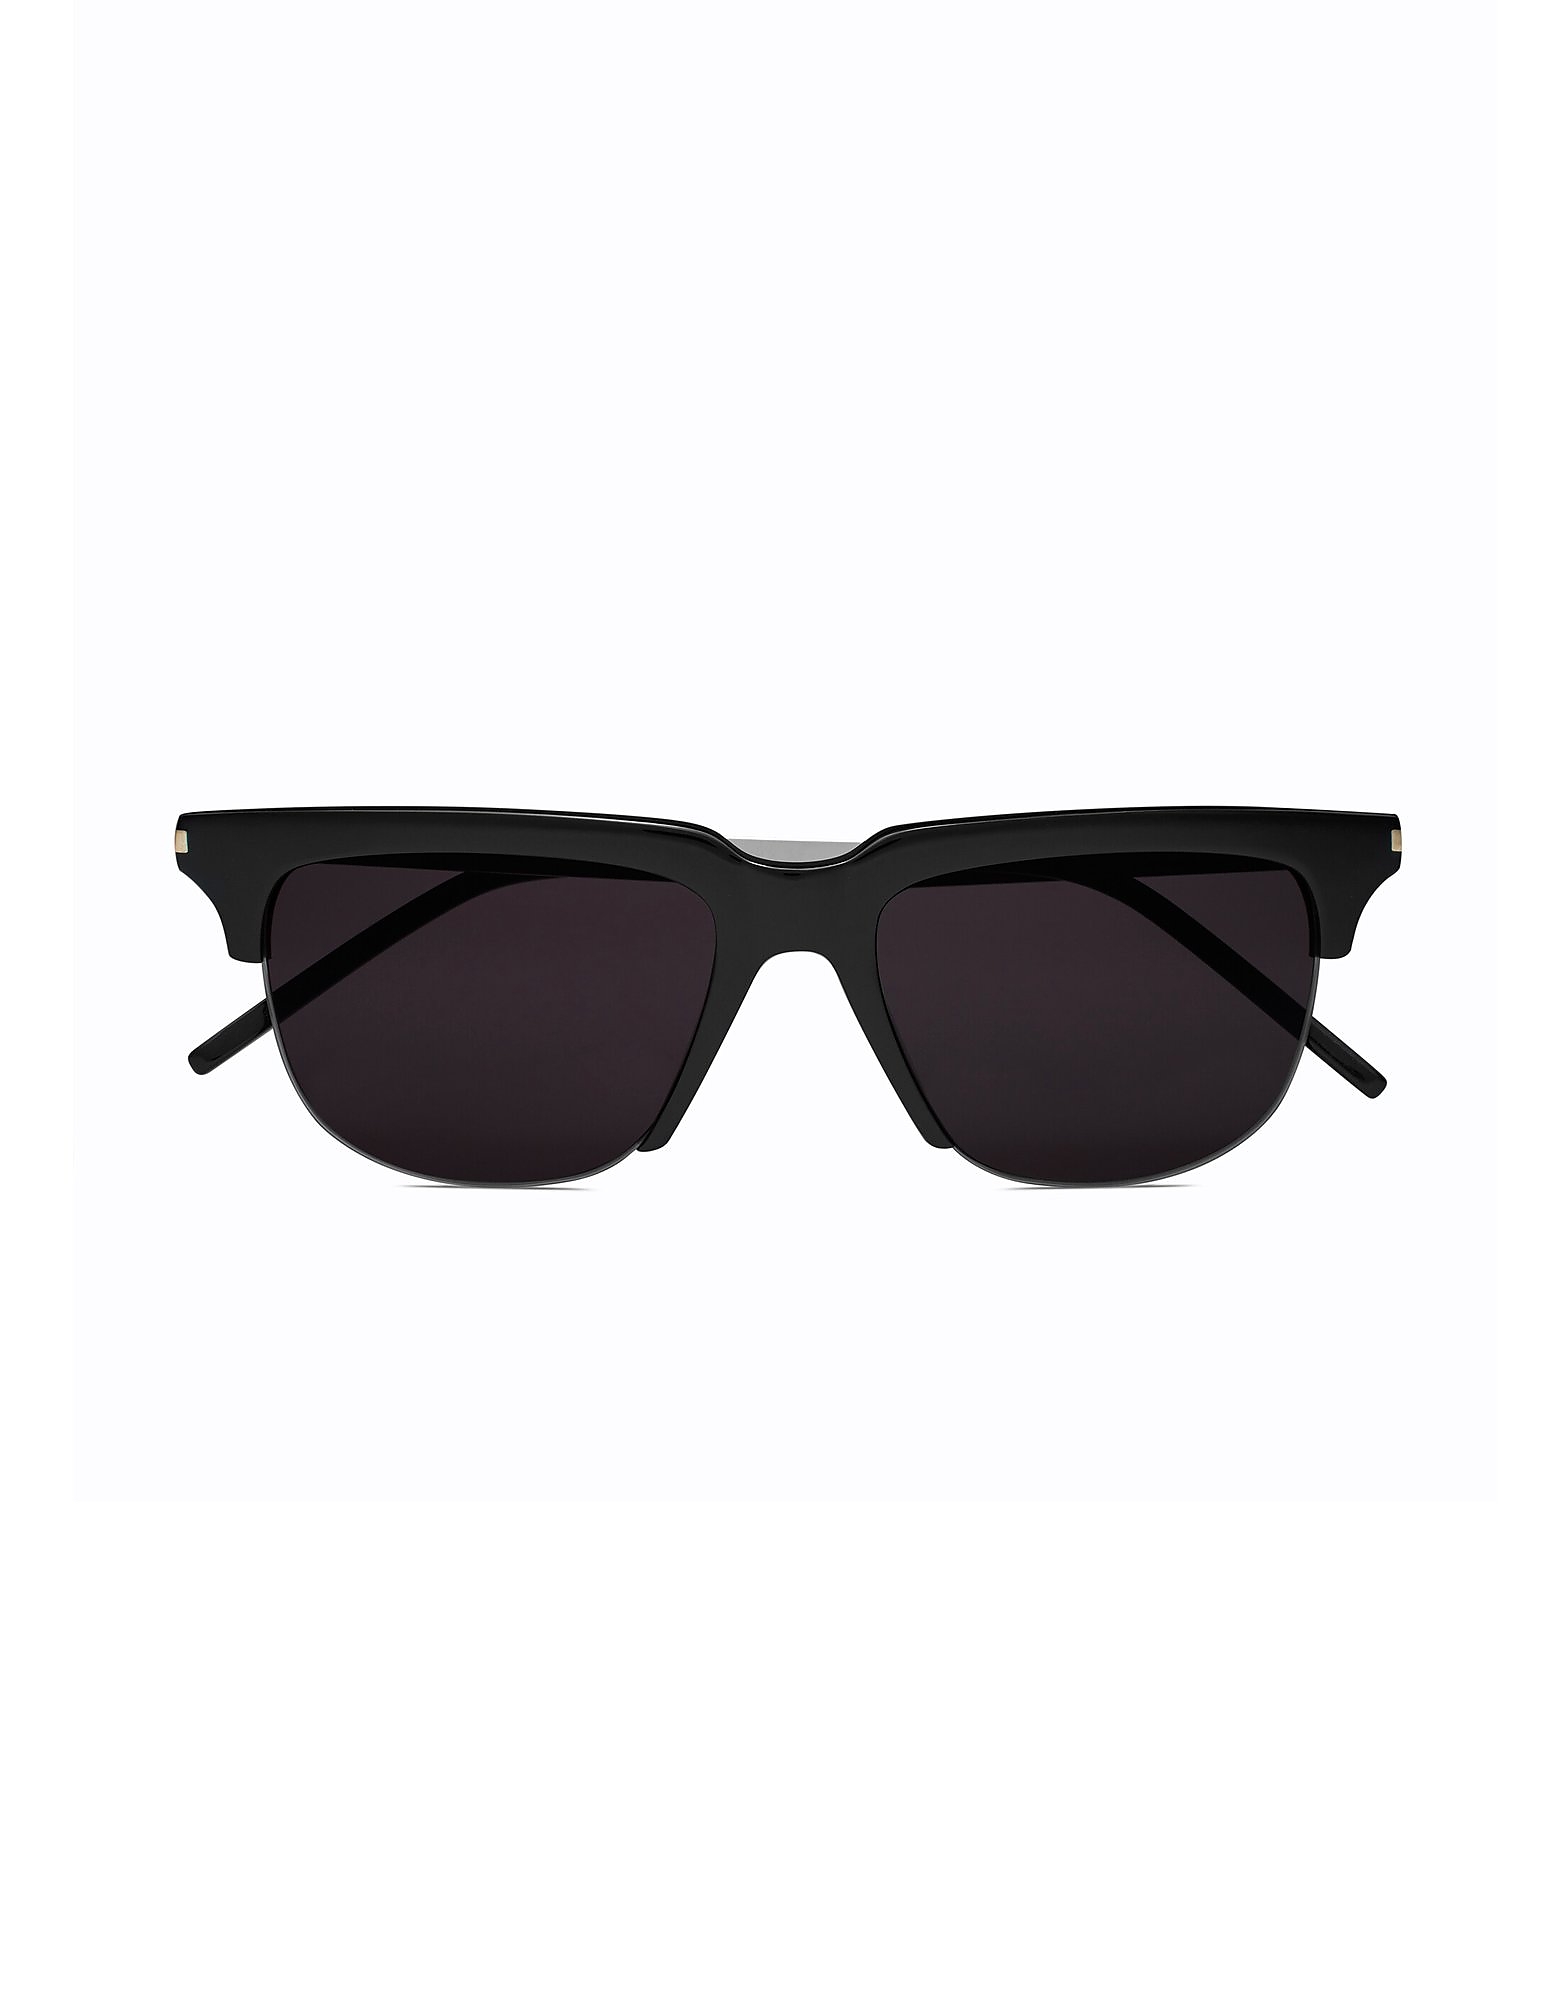 Saint Laurent Sunglasses Metal & Acetate Half Rim Men's Sunglasses